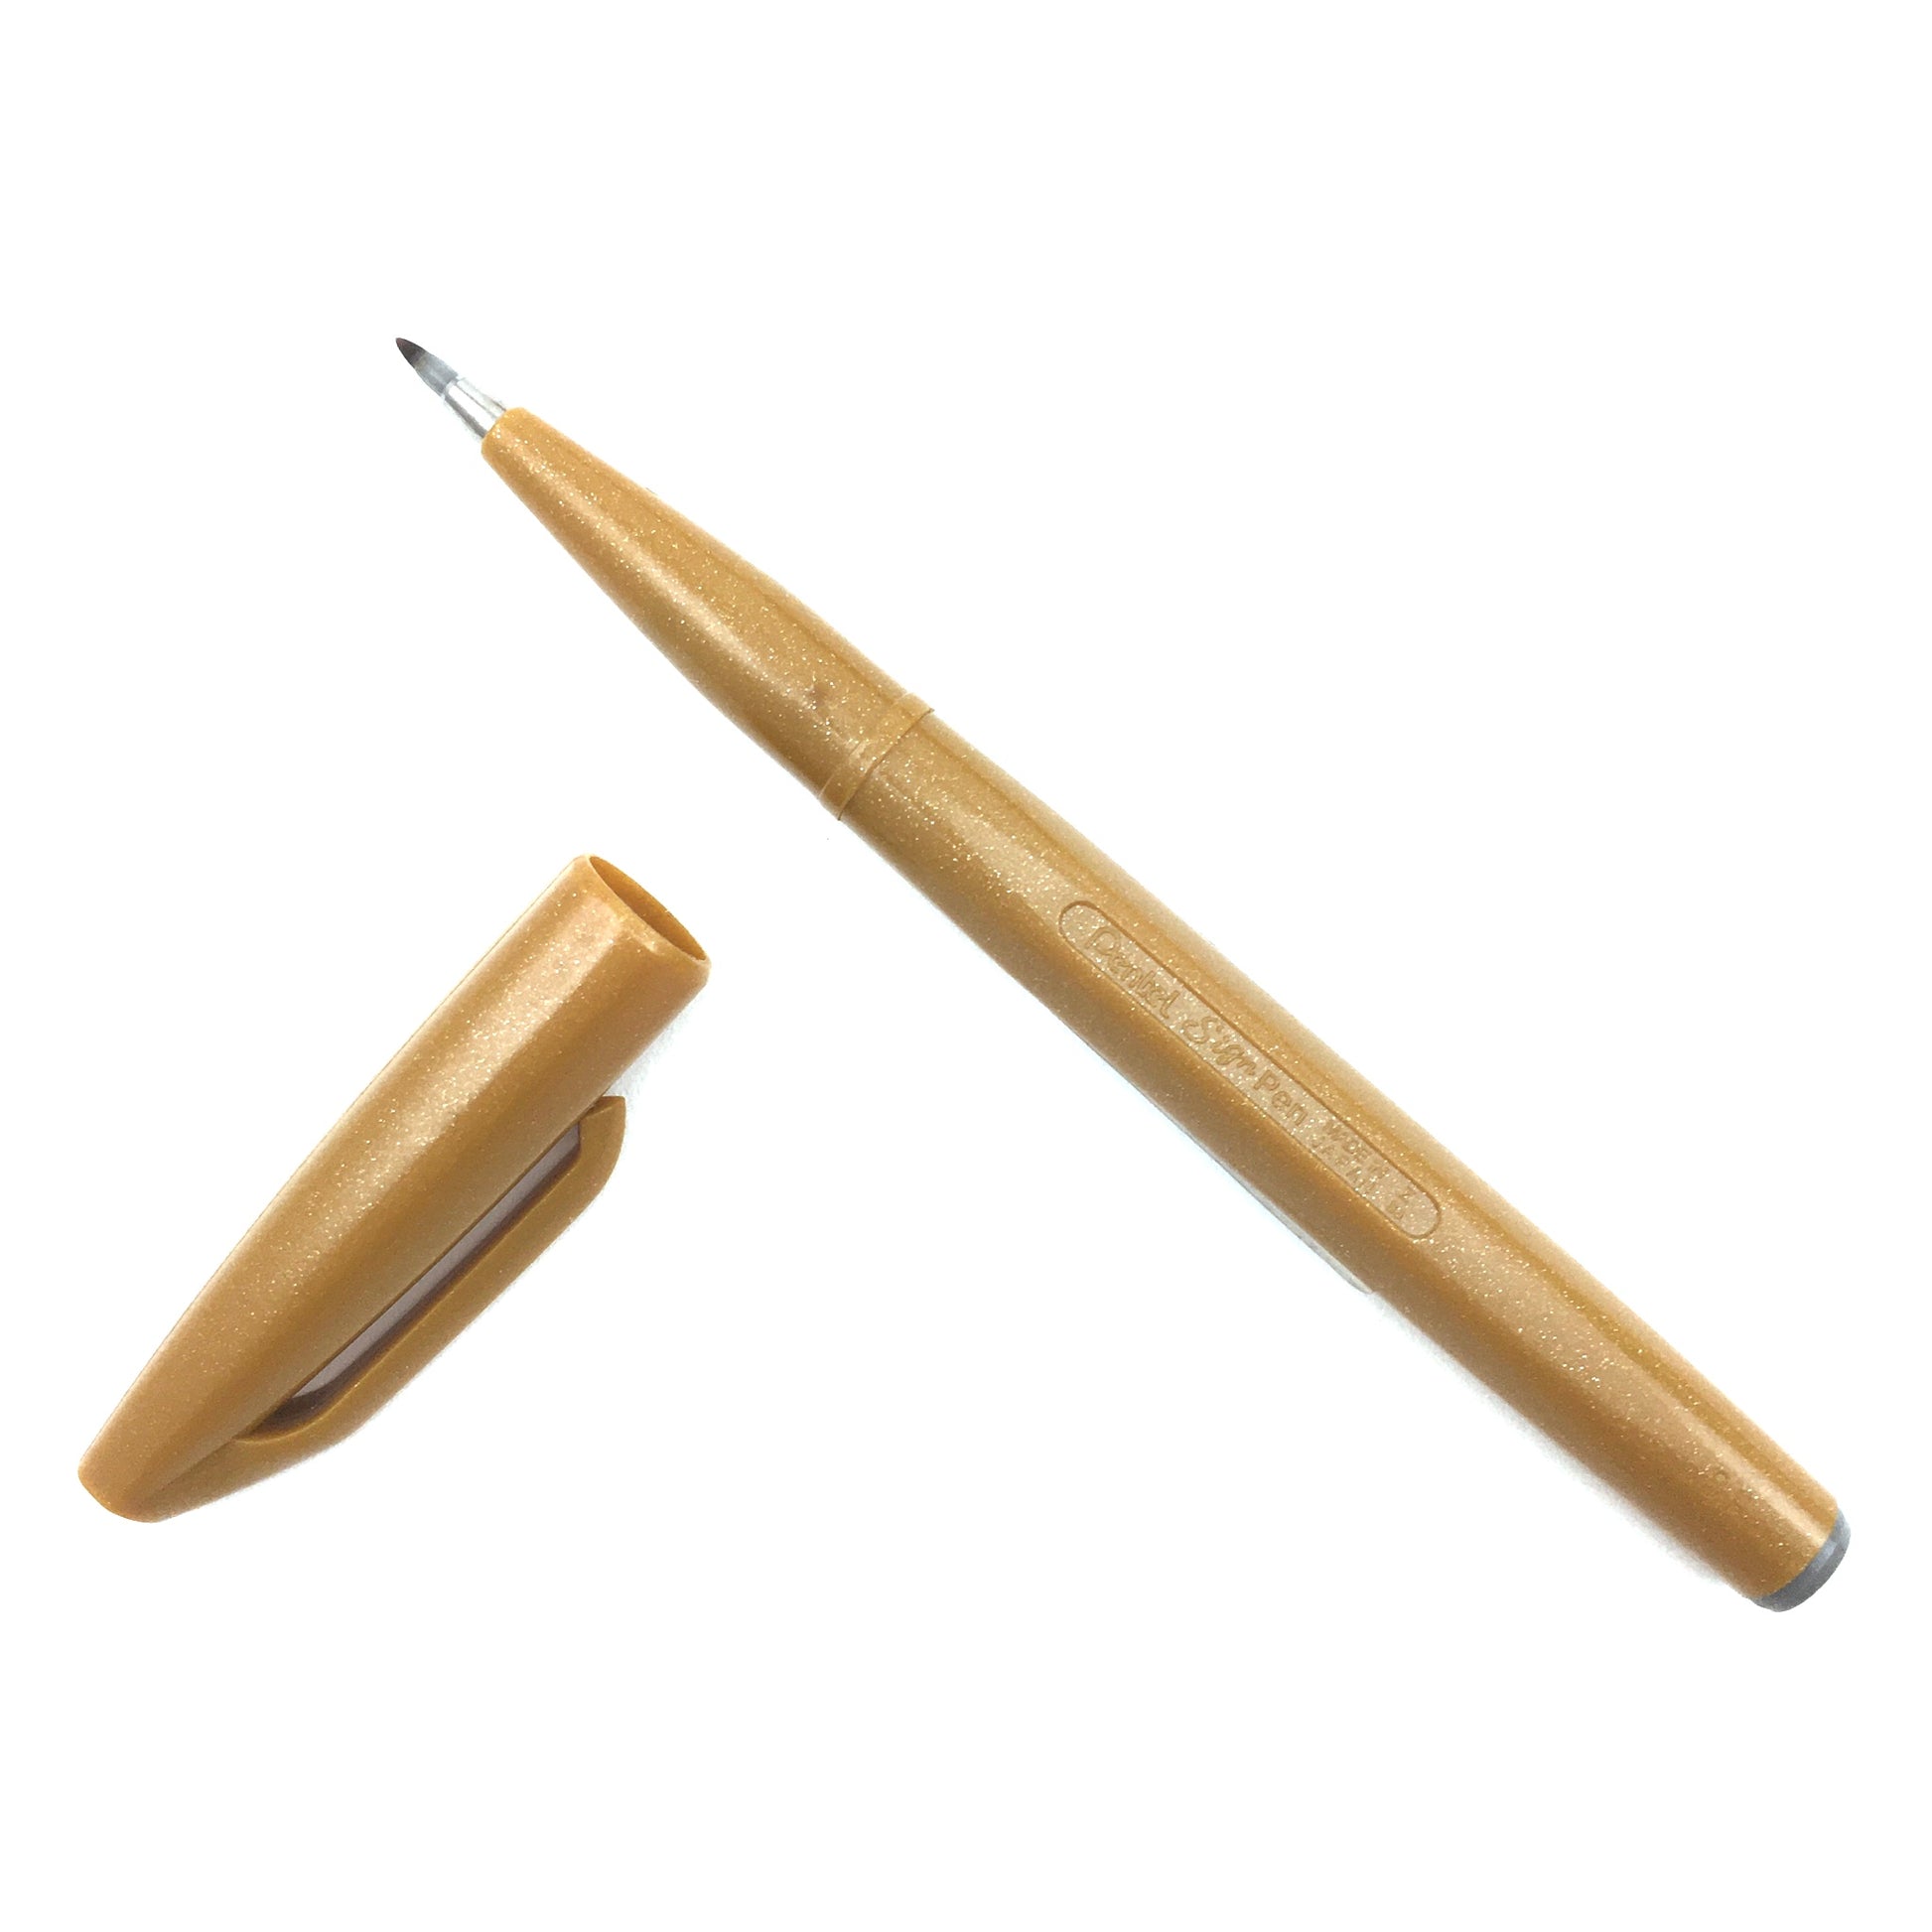 Color Pen Gold Ochre